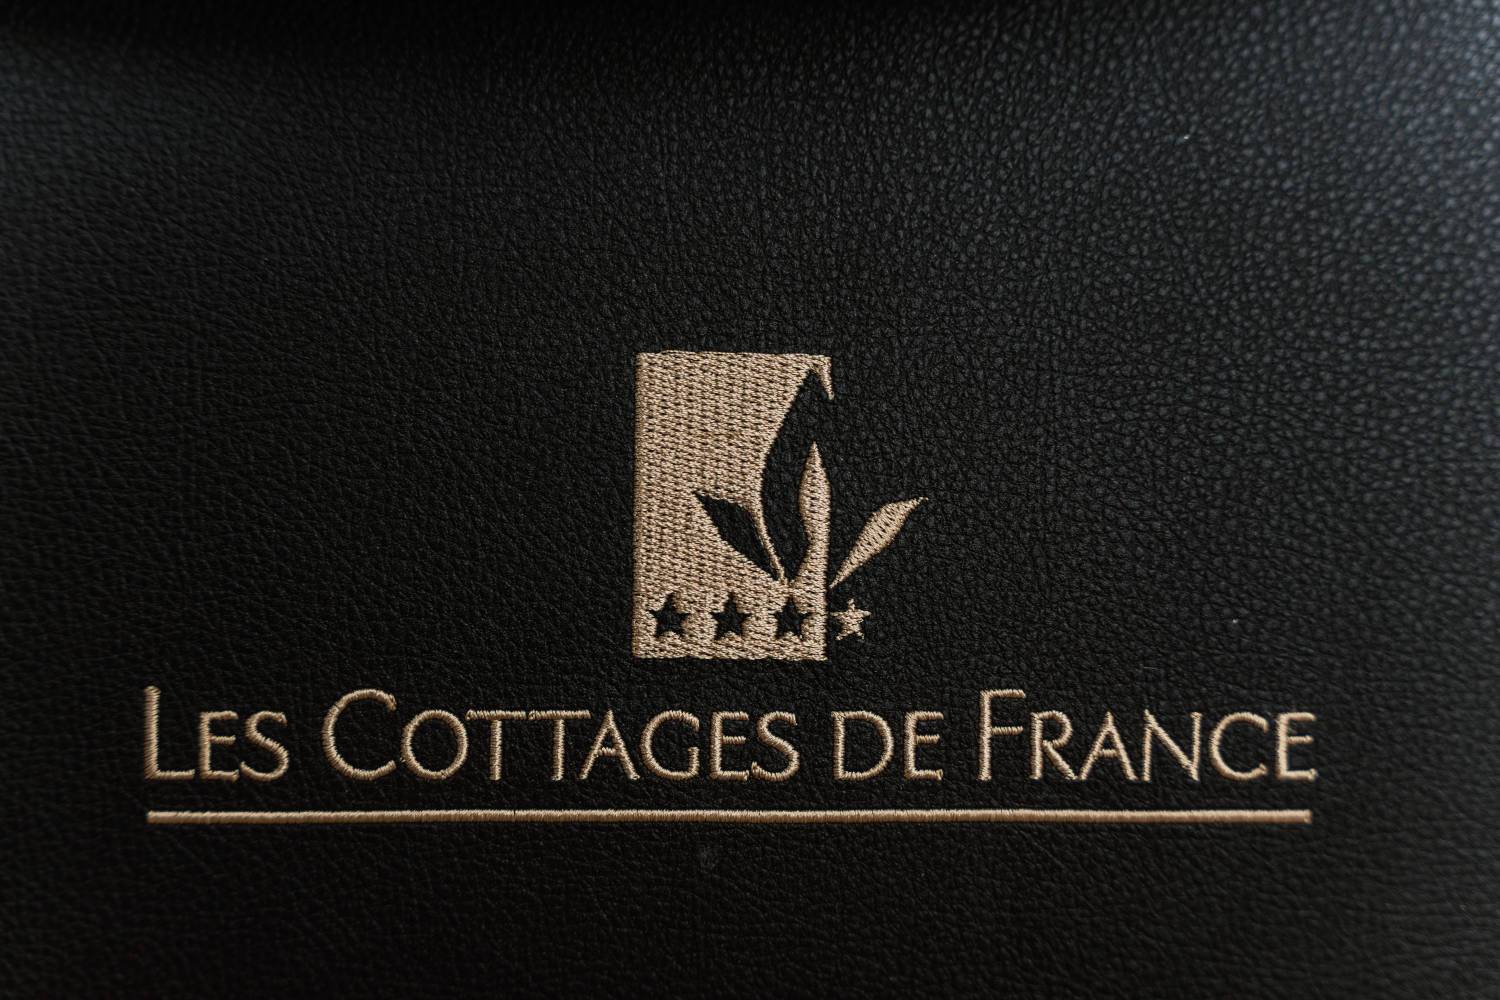 Les Cottages de France | Les Cottages de France, hôtel près de l'aéroport CDG et Villepinte